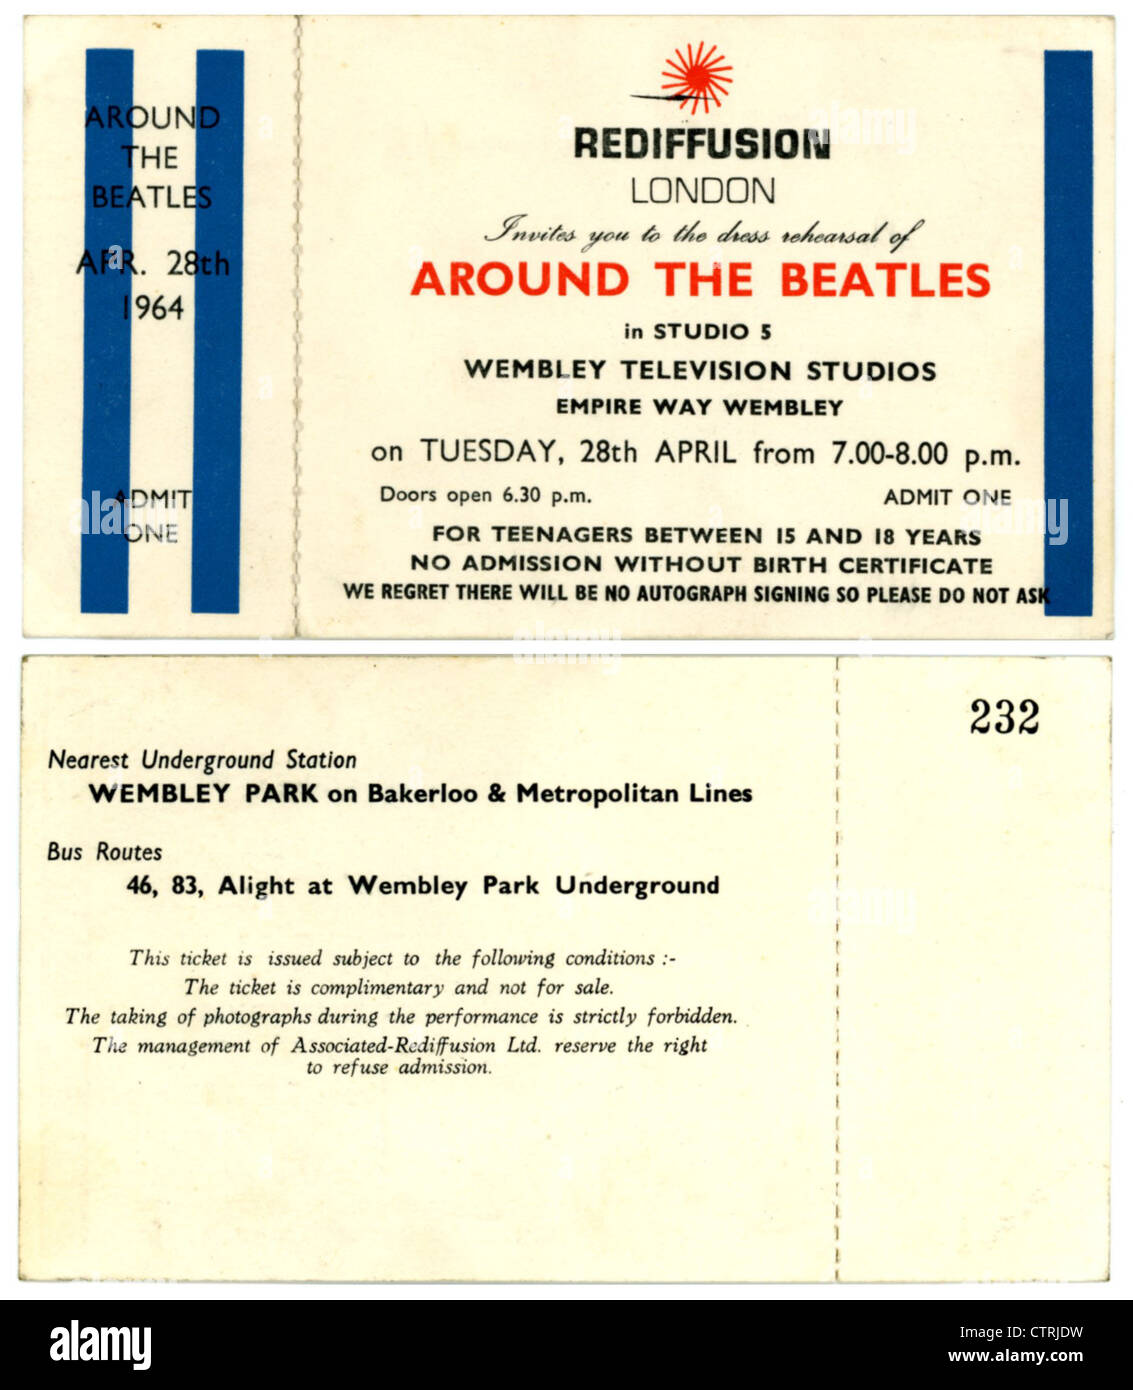 001002 - die Beatles Associated Rediffusion rund um das Beatles-Konzert-Ticket von Wembley Fernsehstudios am 28. April 1964 Stockfoto